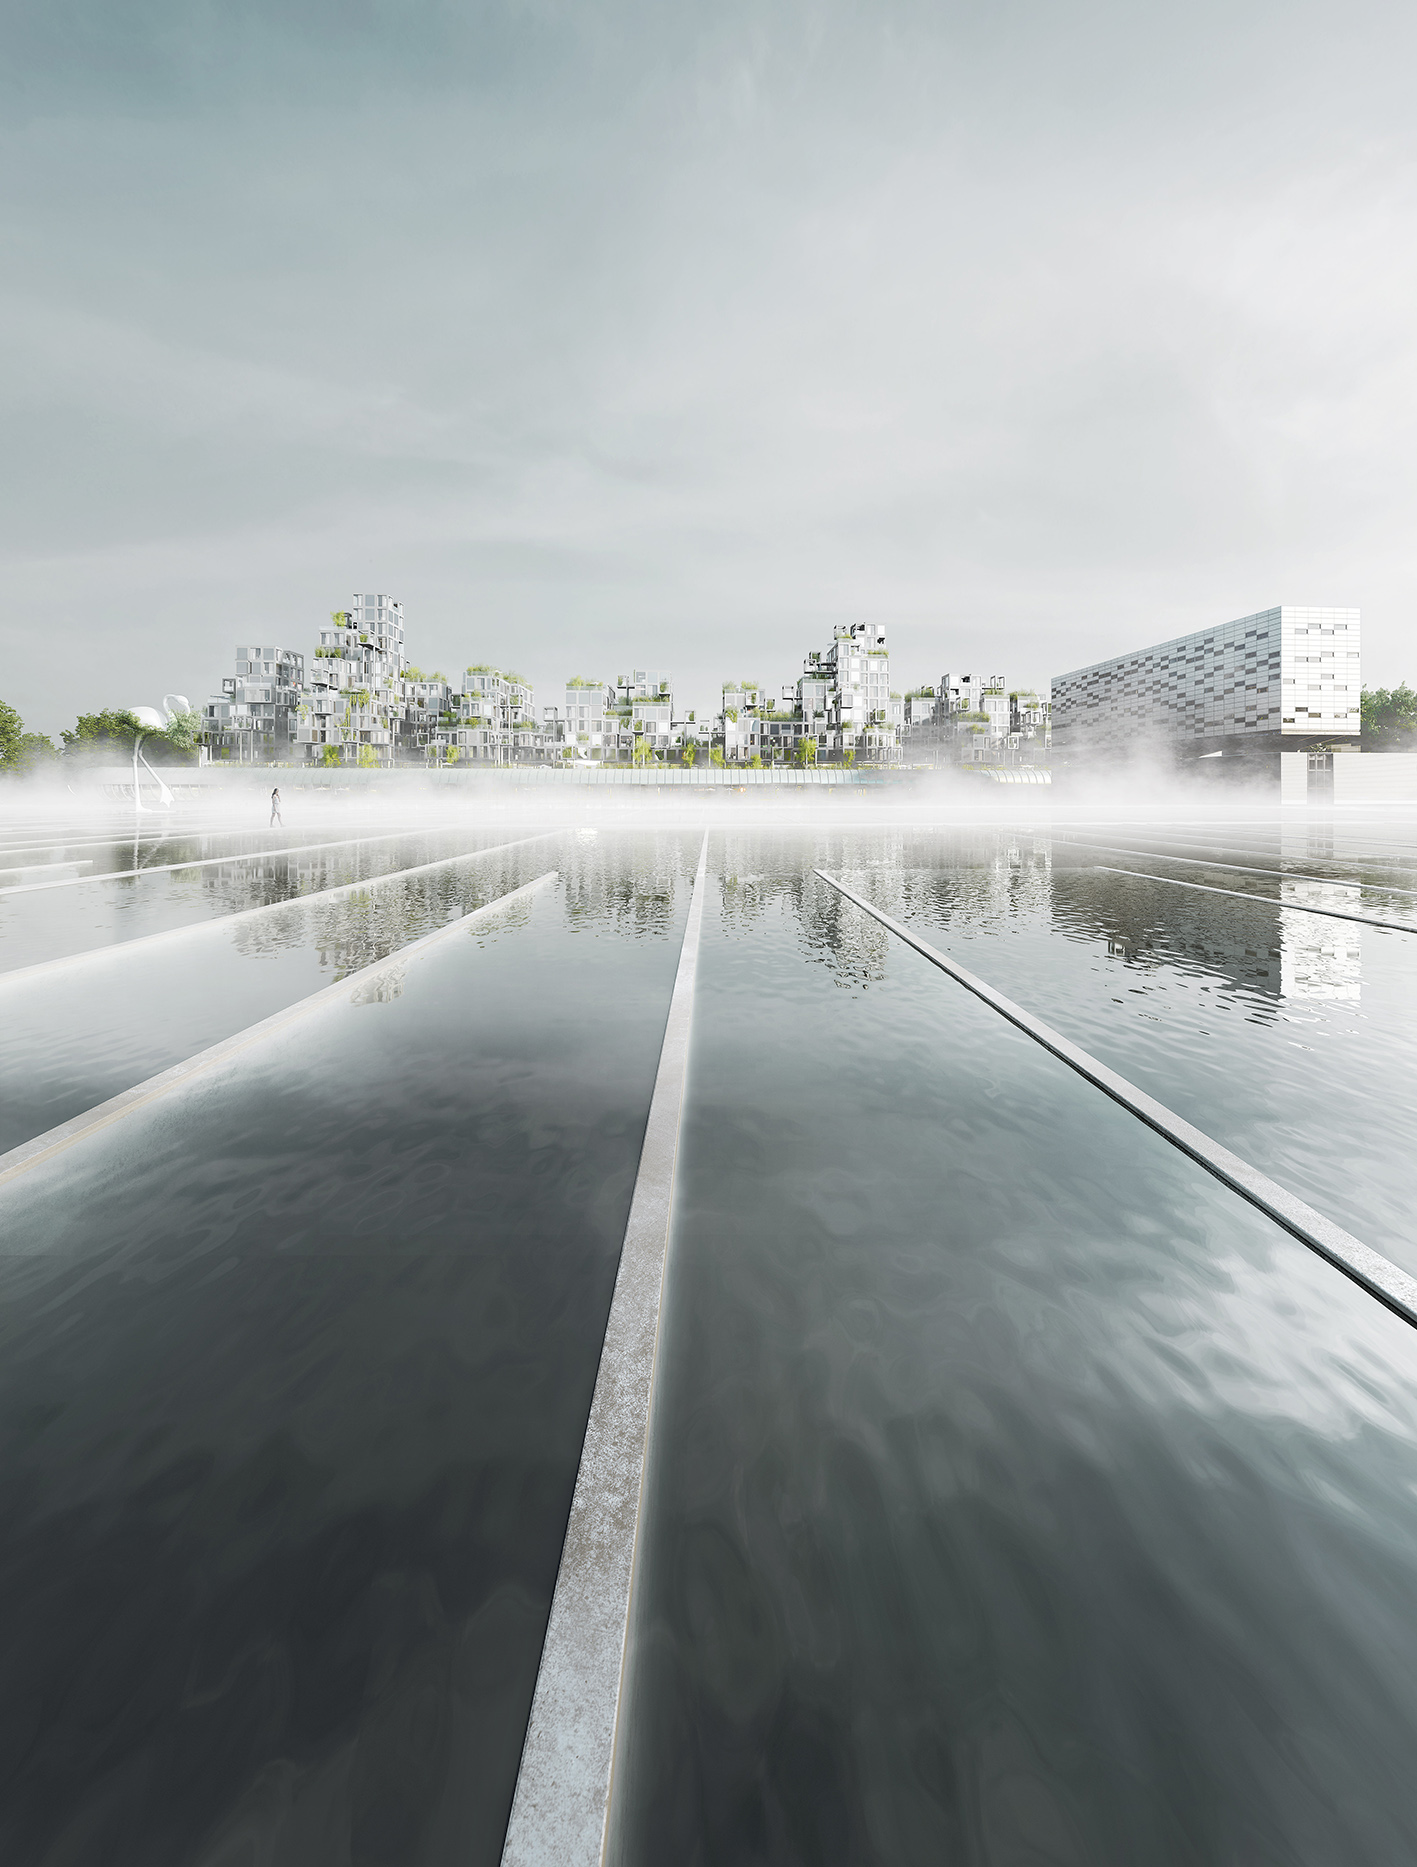 dans le cadre de Réinventer la Seine, ce projet conçu avec l'agence XTU en partenariat avec le groupe Pichet se trouve sur le site de l'usines des eaux d'Ivry sur seine créée par Dominique Perrault.